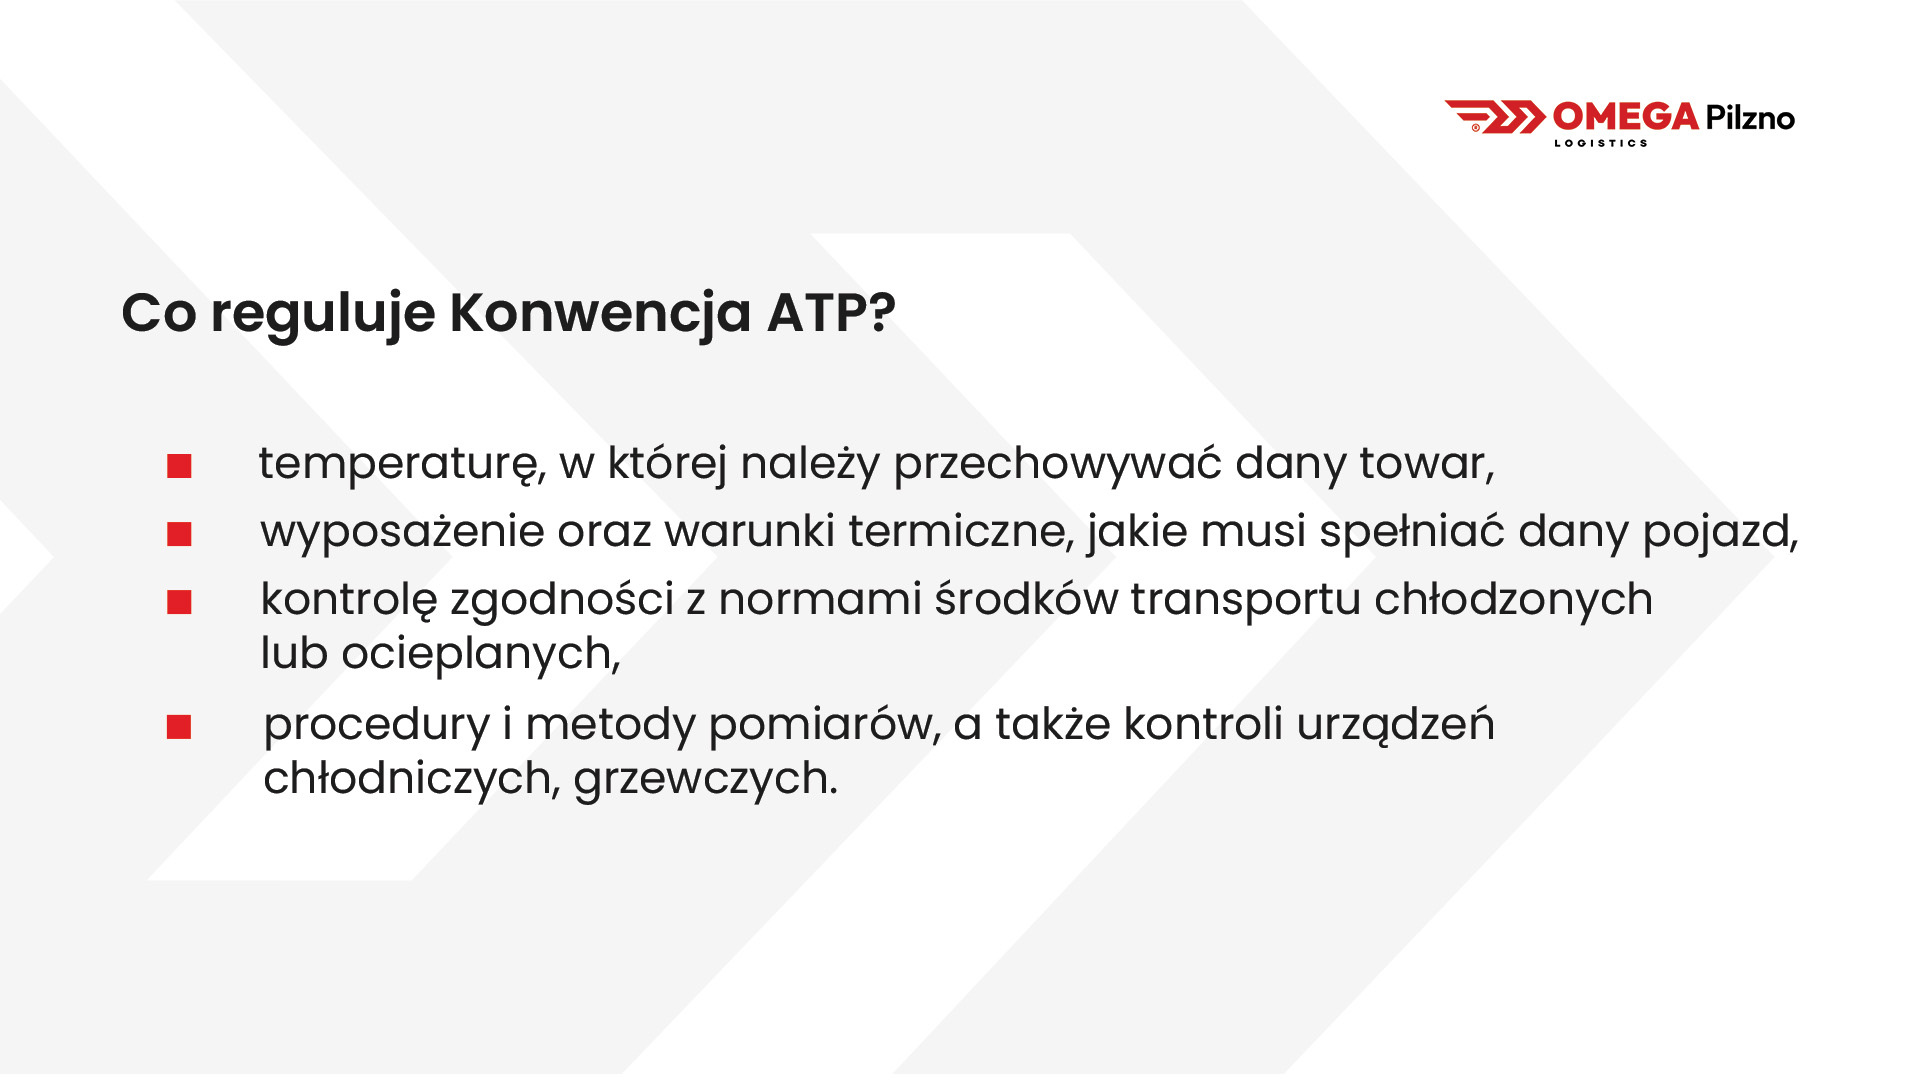 Konwencja ATP w transporcie.